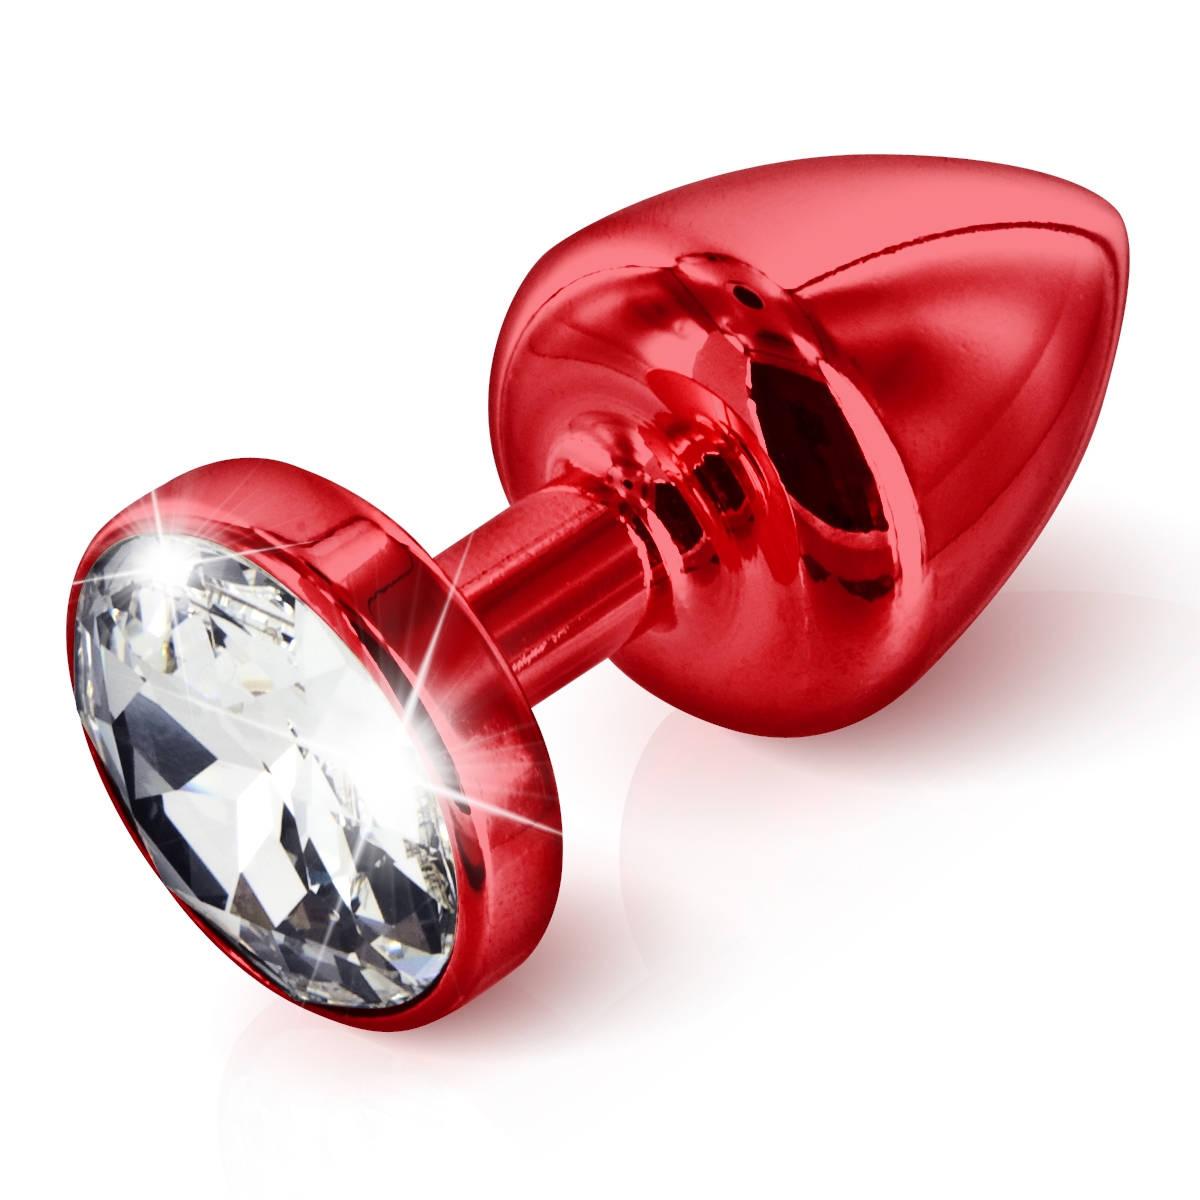 Anál ékszer - rubin butt plug Swarovski kristállyal (3,5 cm) Dildó, vibrátor, butt-plug kép